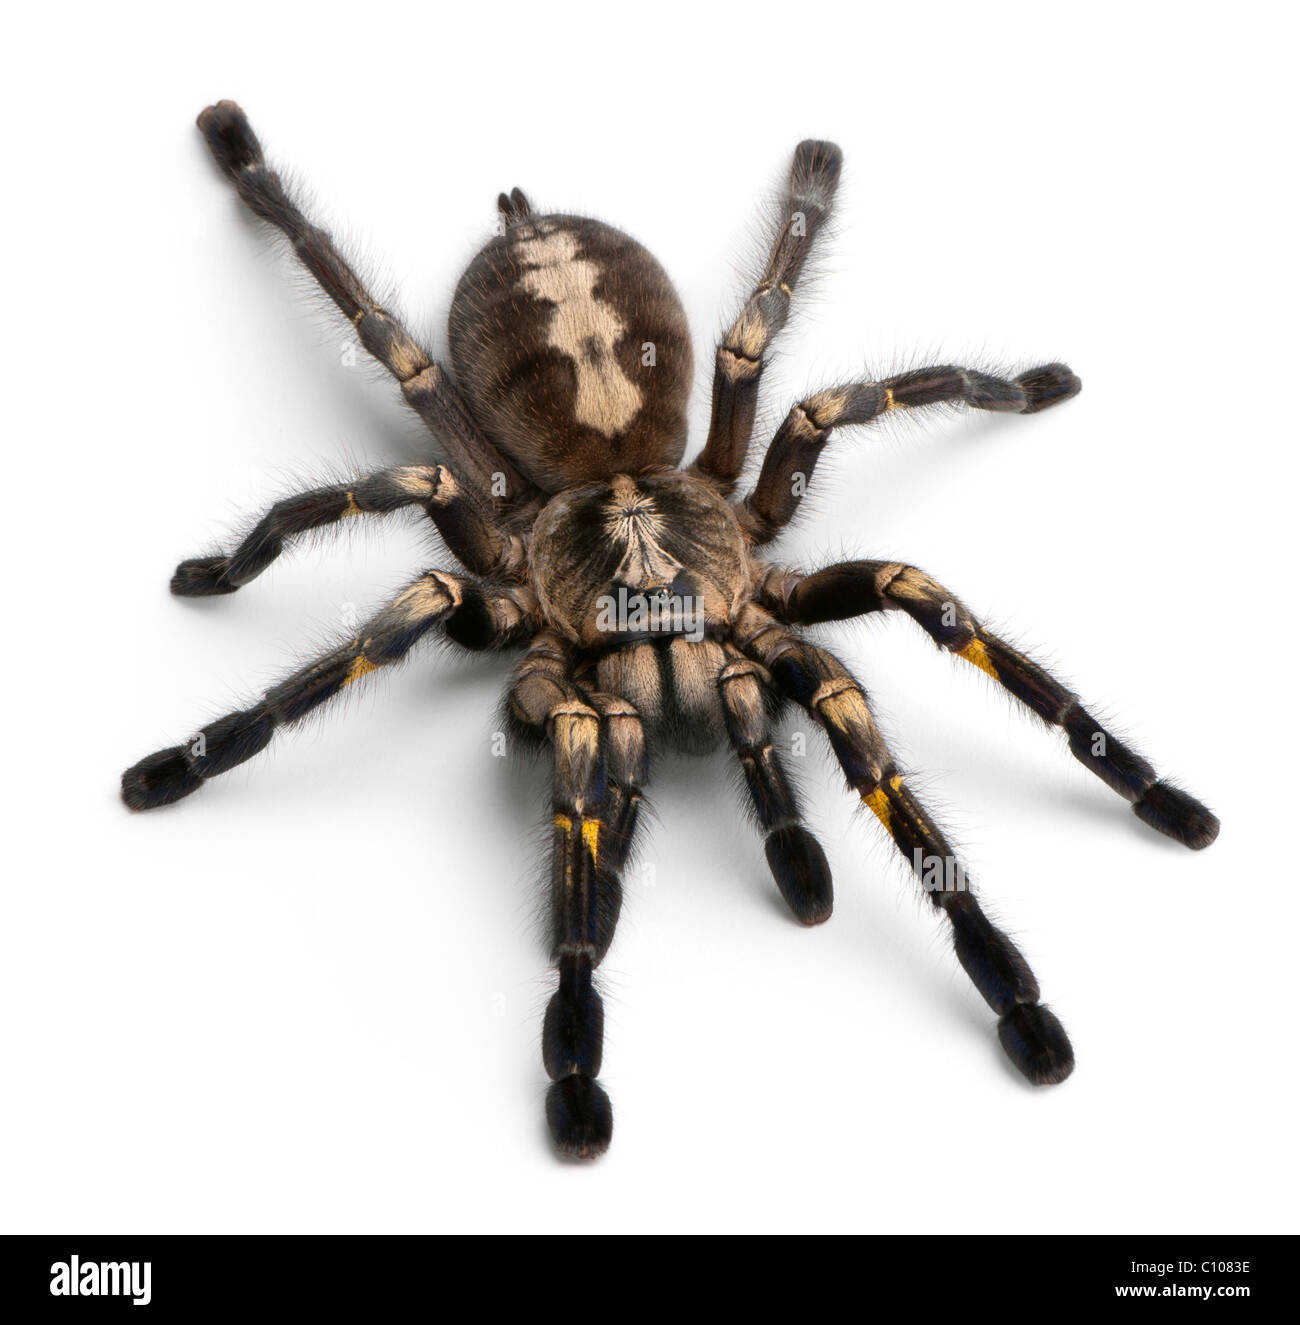 Tarantula spider, Poecilotheria metallica, di fronte a uno sfondo bianco Foto Stock